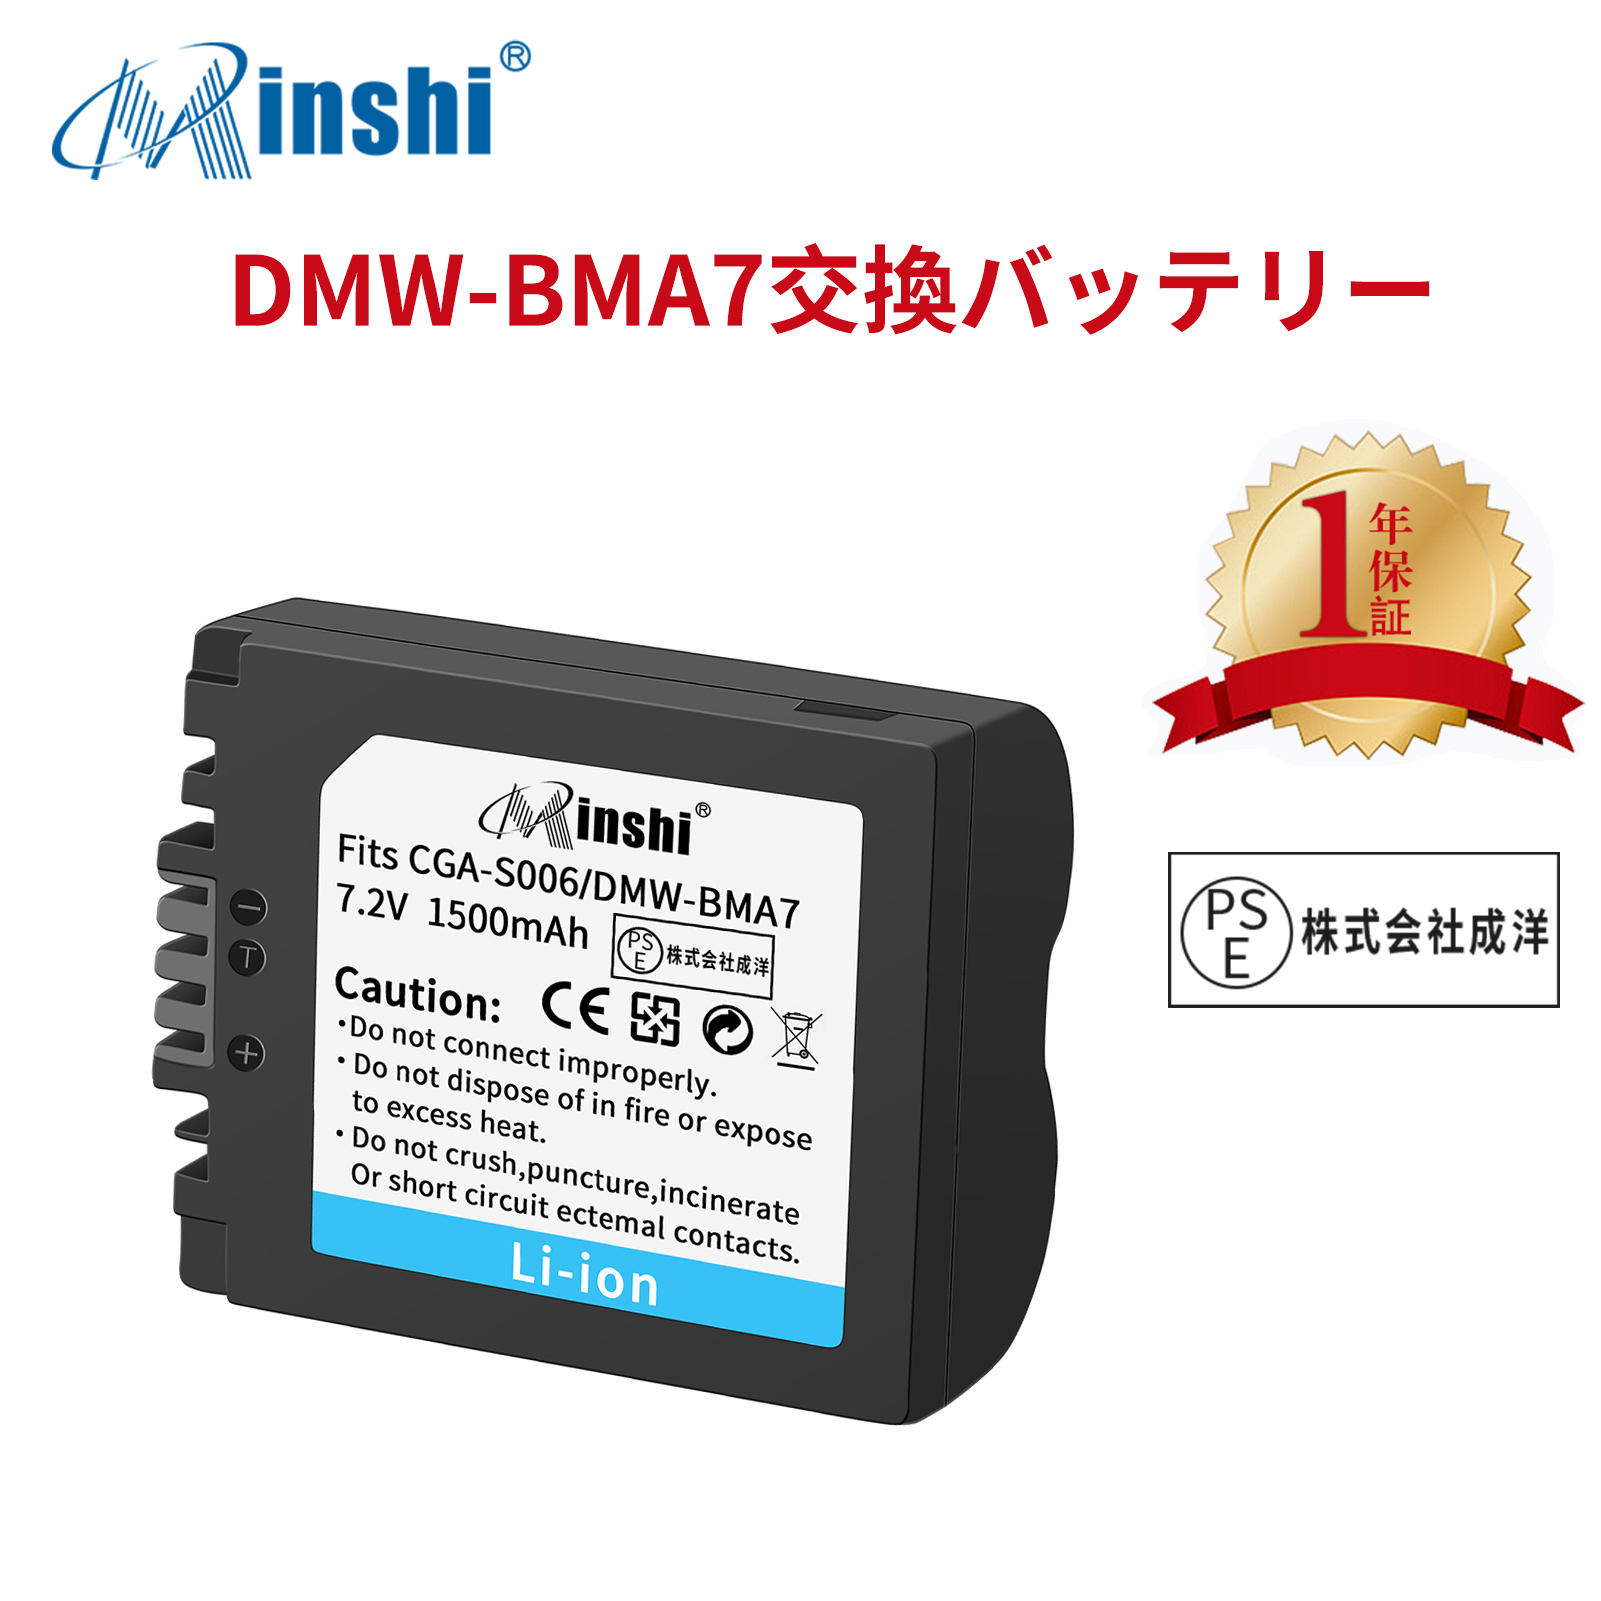 【1年保証】minshi Panasonic DMC-FZ18 DMW-BMA7  DMW-BMA7【1500mAh 7.2V】LUMIX PSE認定済 高品質交換用バッテリー